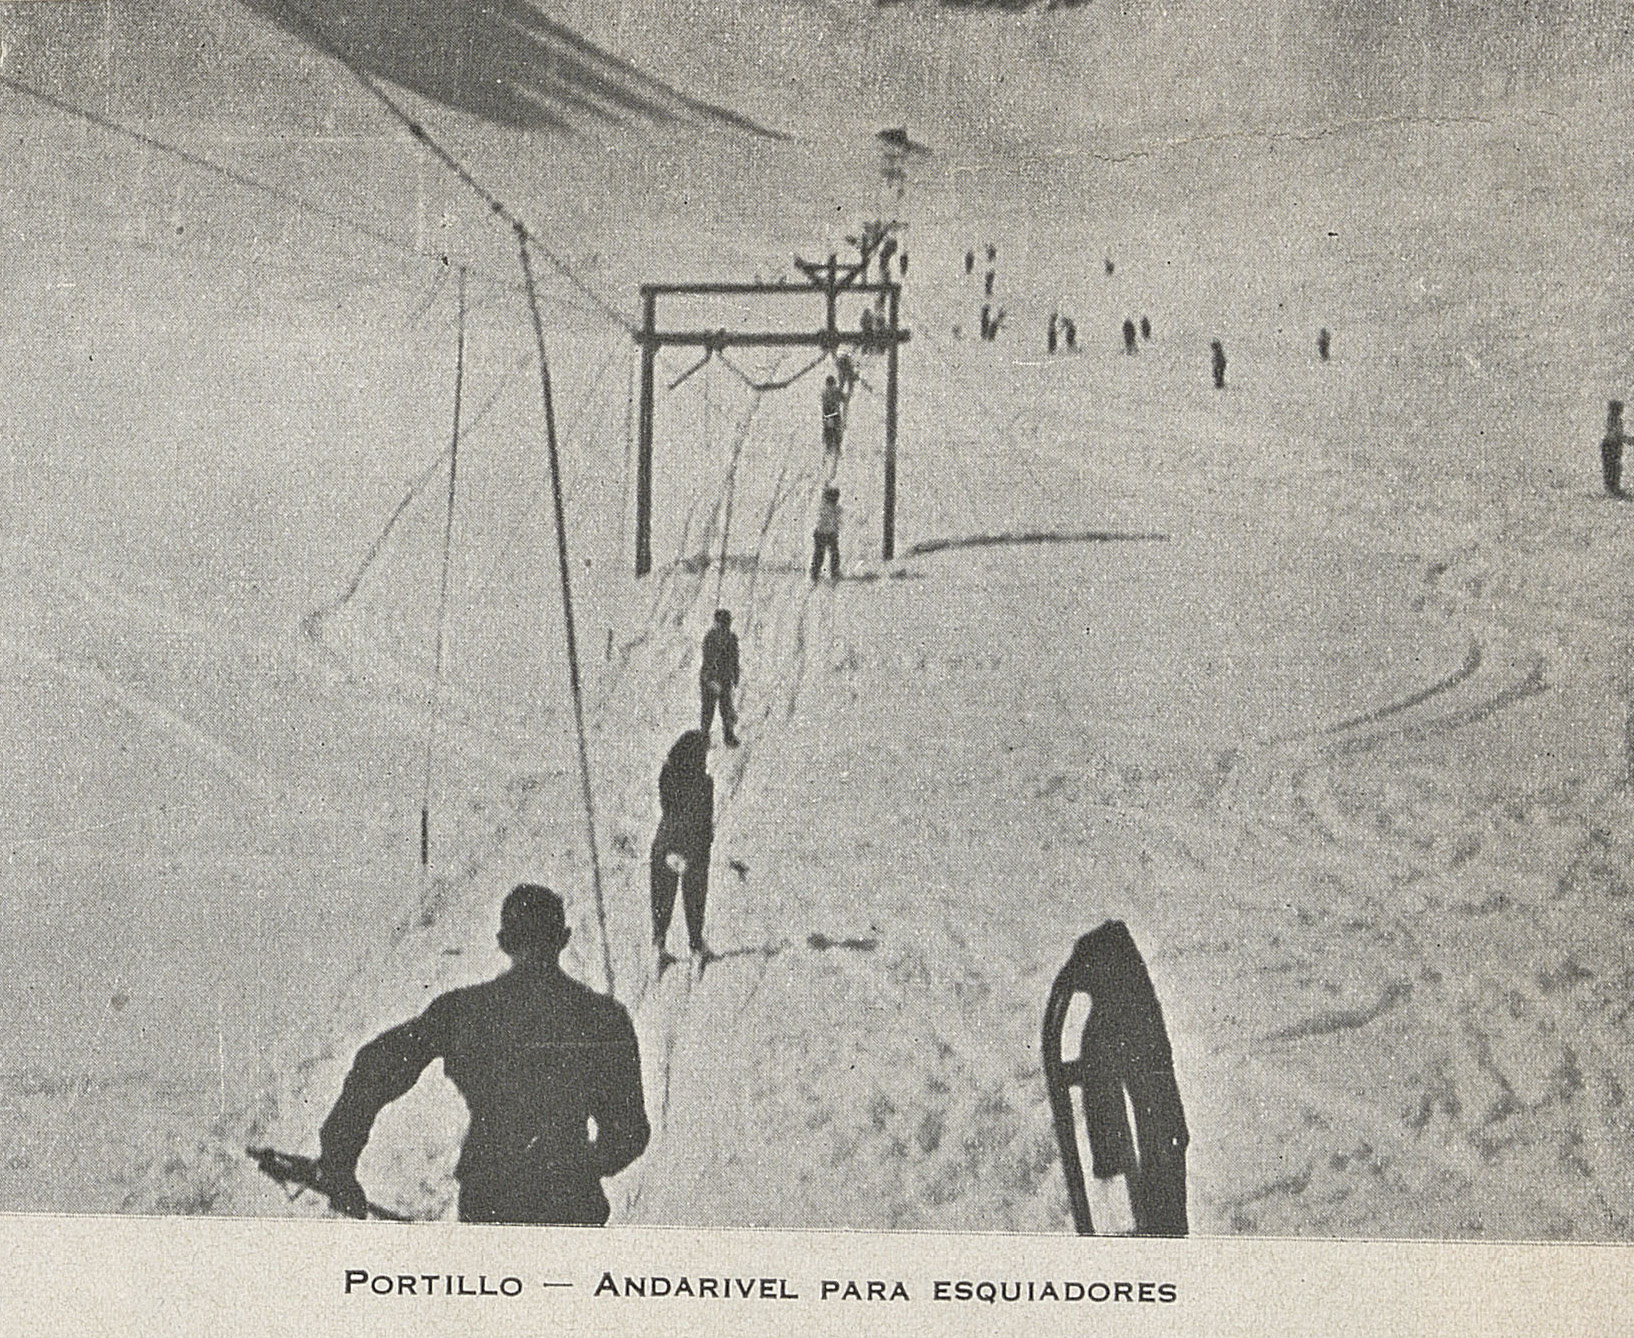 Andarivel para esquiadores, Portillo